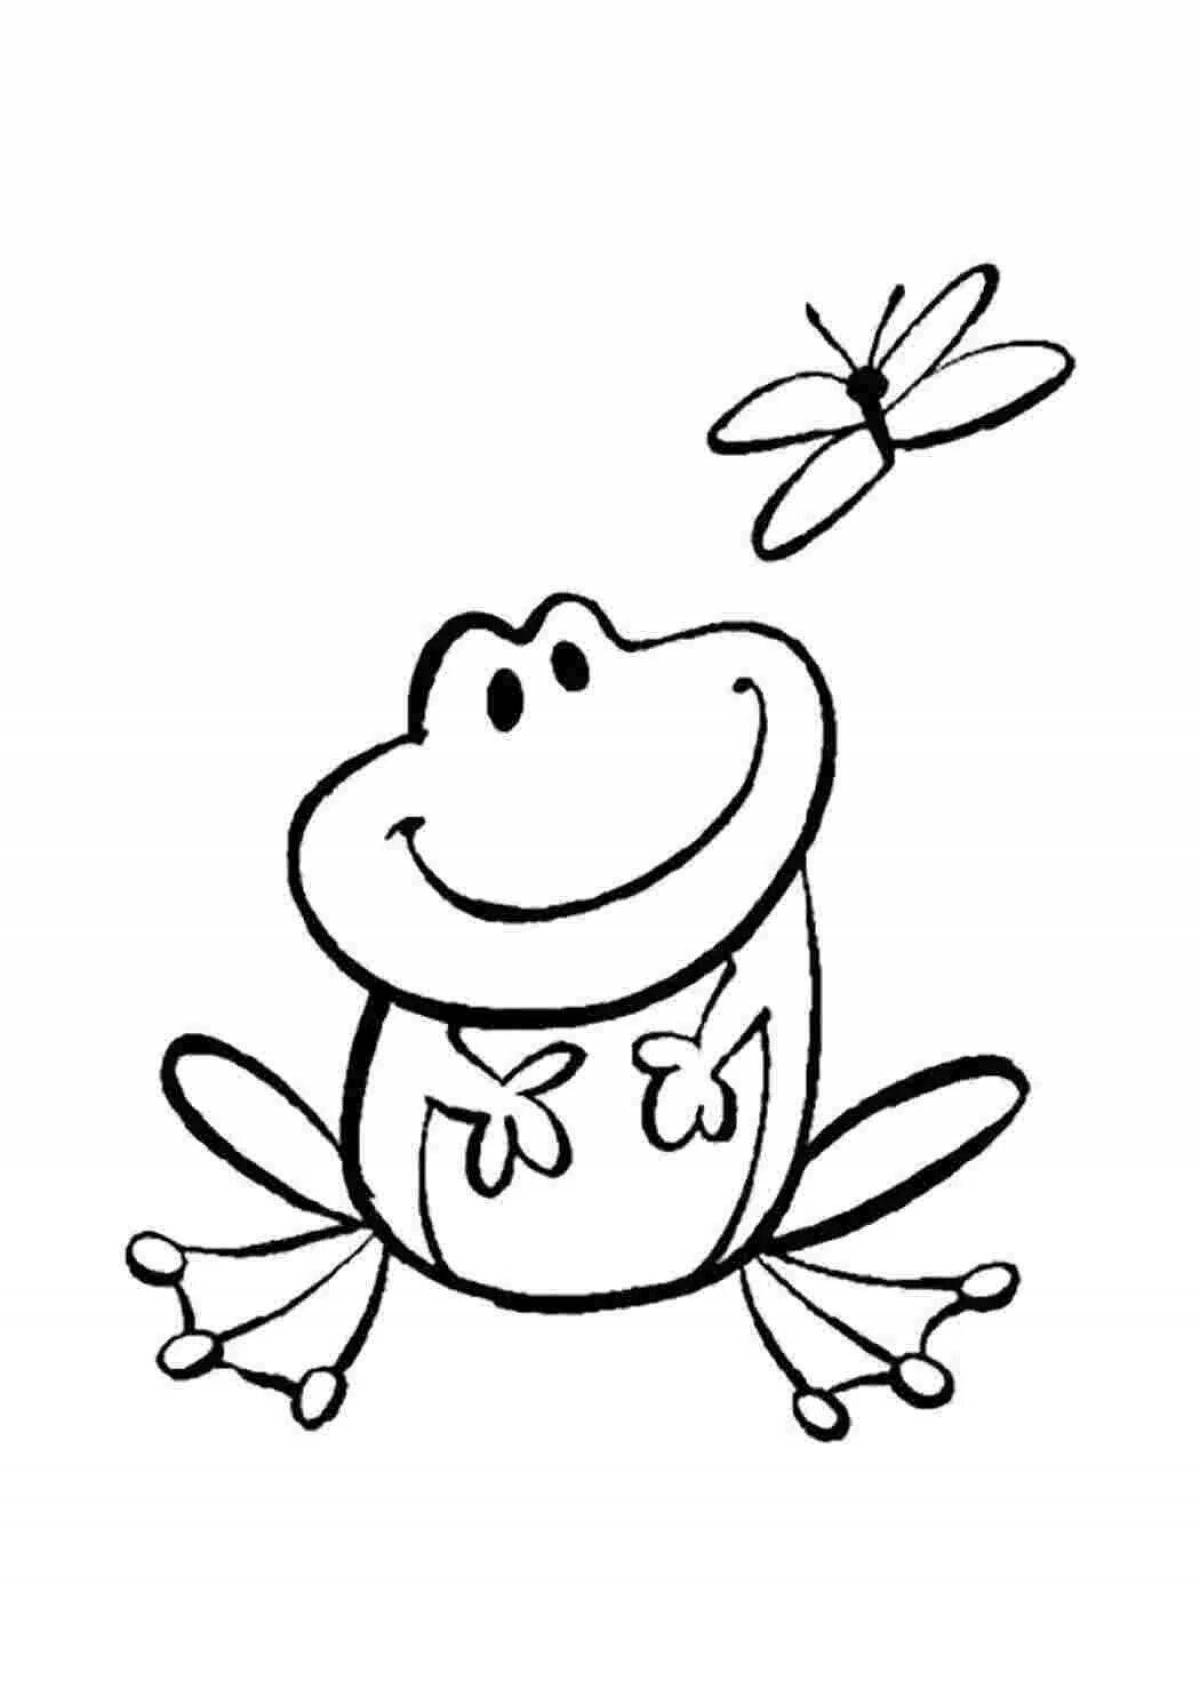 Жирный рисунок лягушки для детей